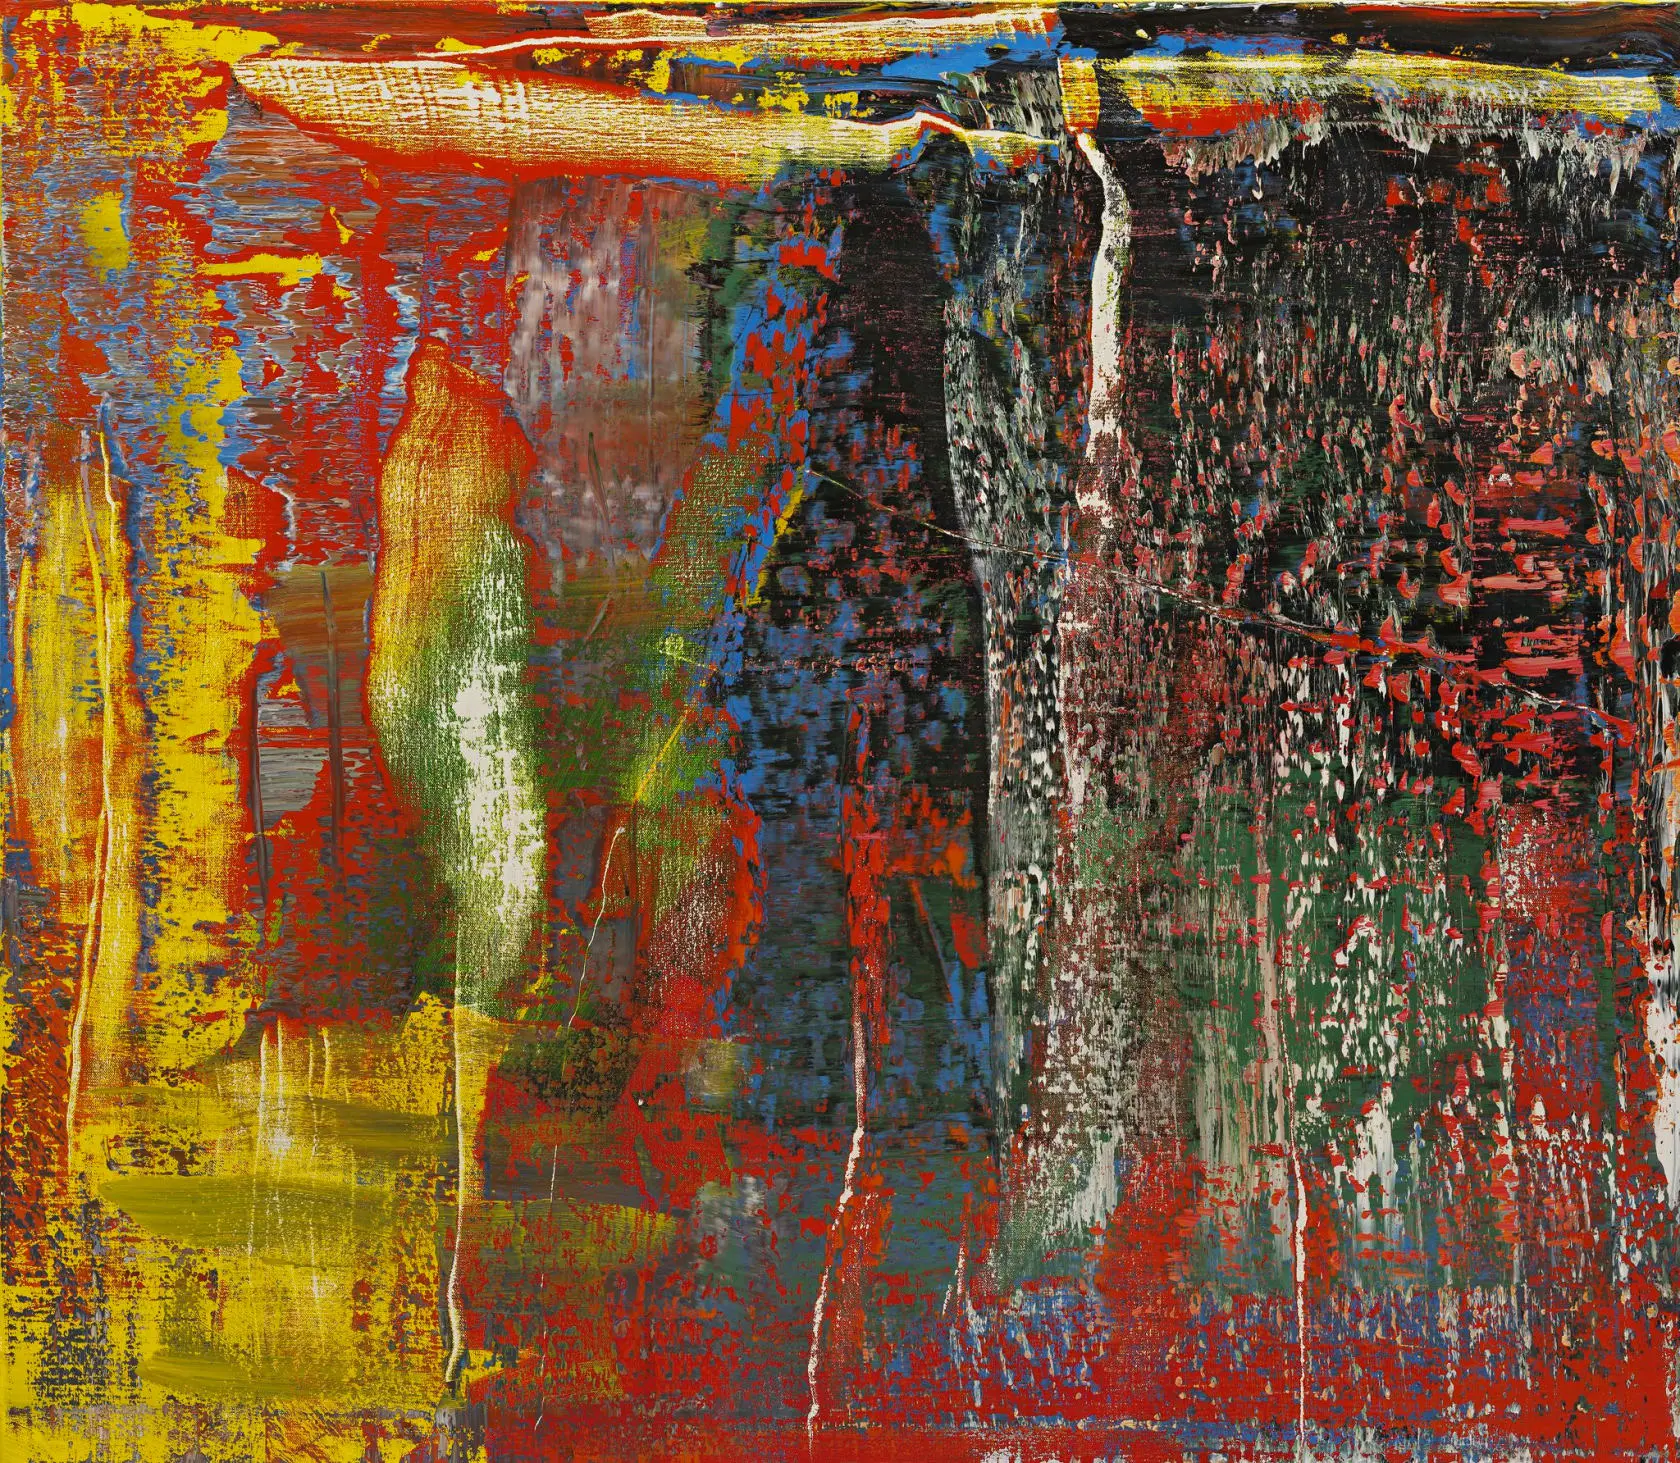 Abstraktes Bild 940-7 (2015) by Gerhard Richter.